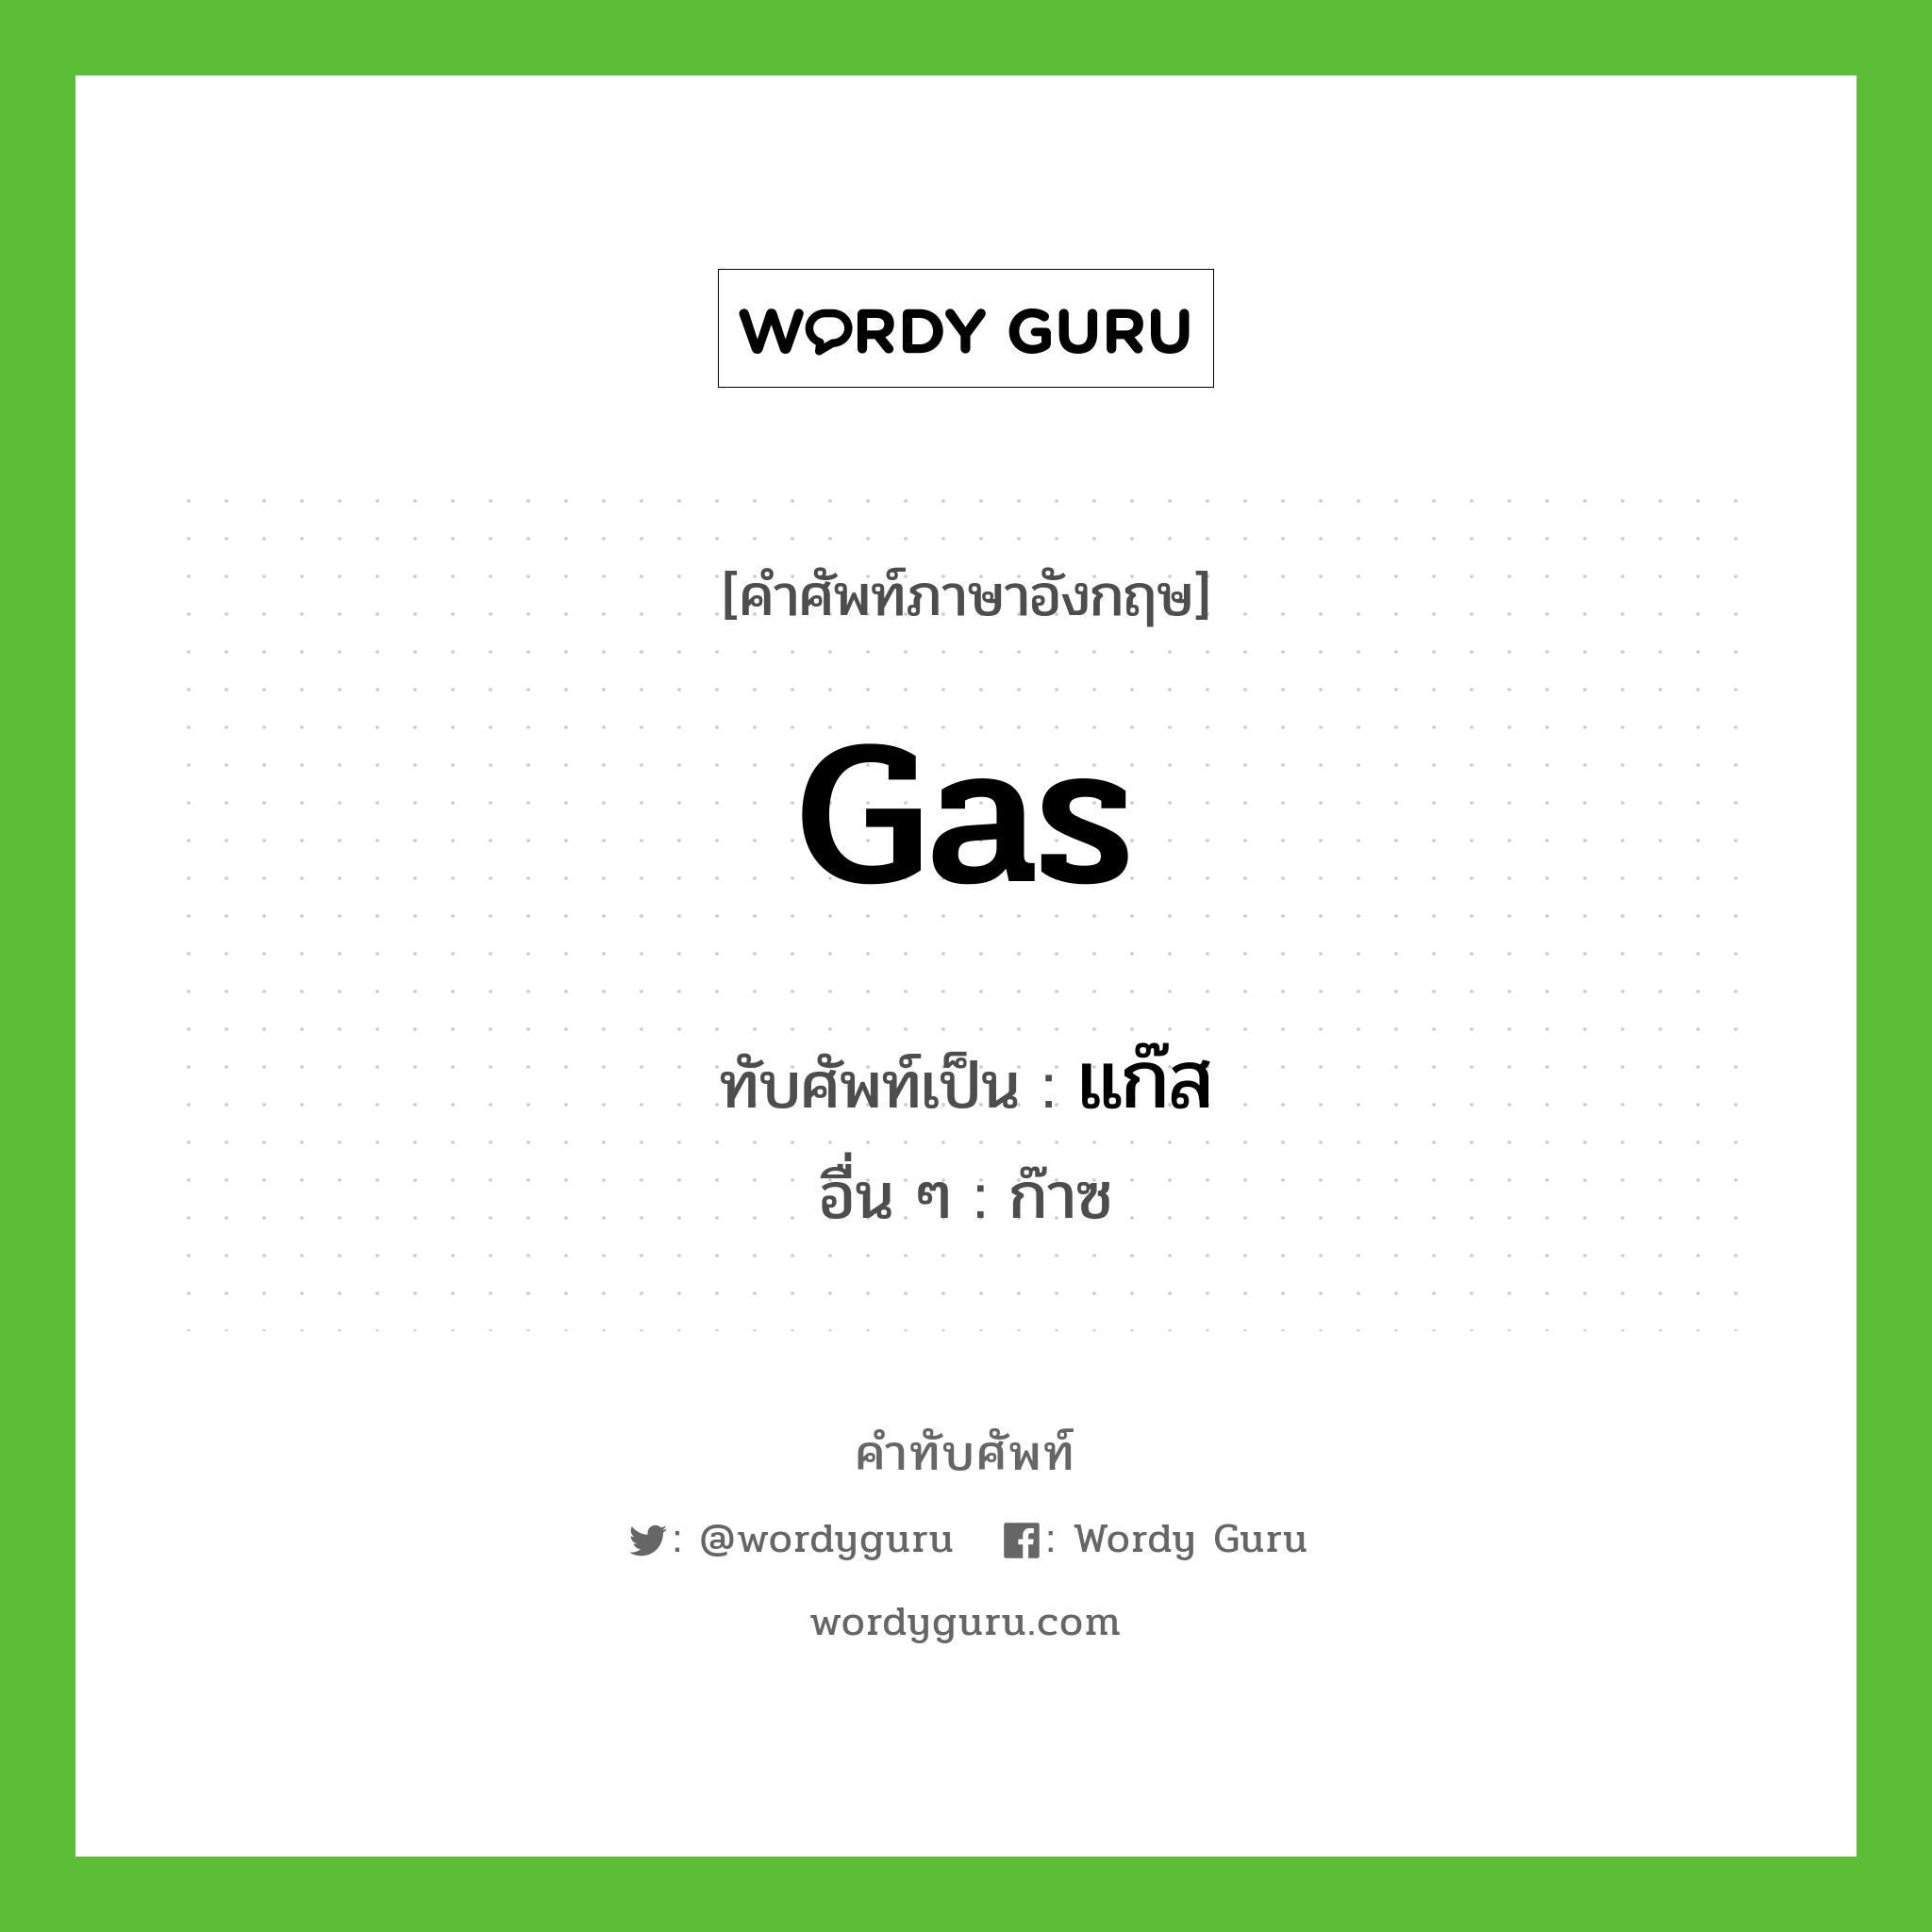 gas เขียนเป็นคำไทยว่าอะไร?, คำศัพท์ภาษาอังกฤษ gas ทับศัพท์เป็น แก๊ส อื่น ๆ ก๊าซ